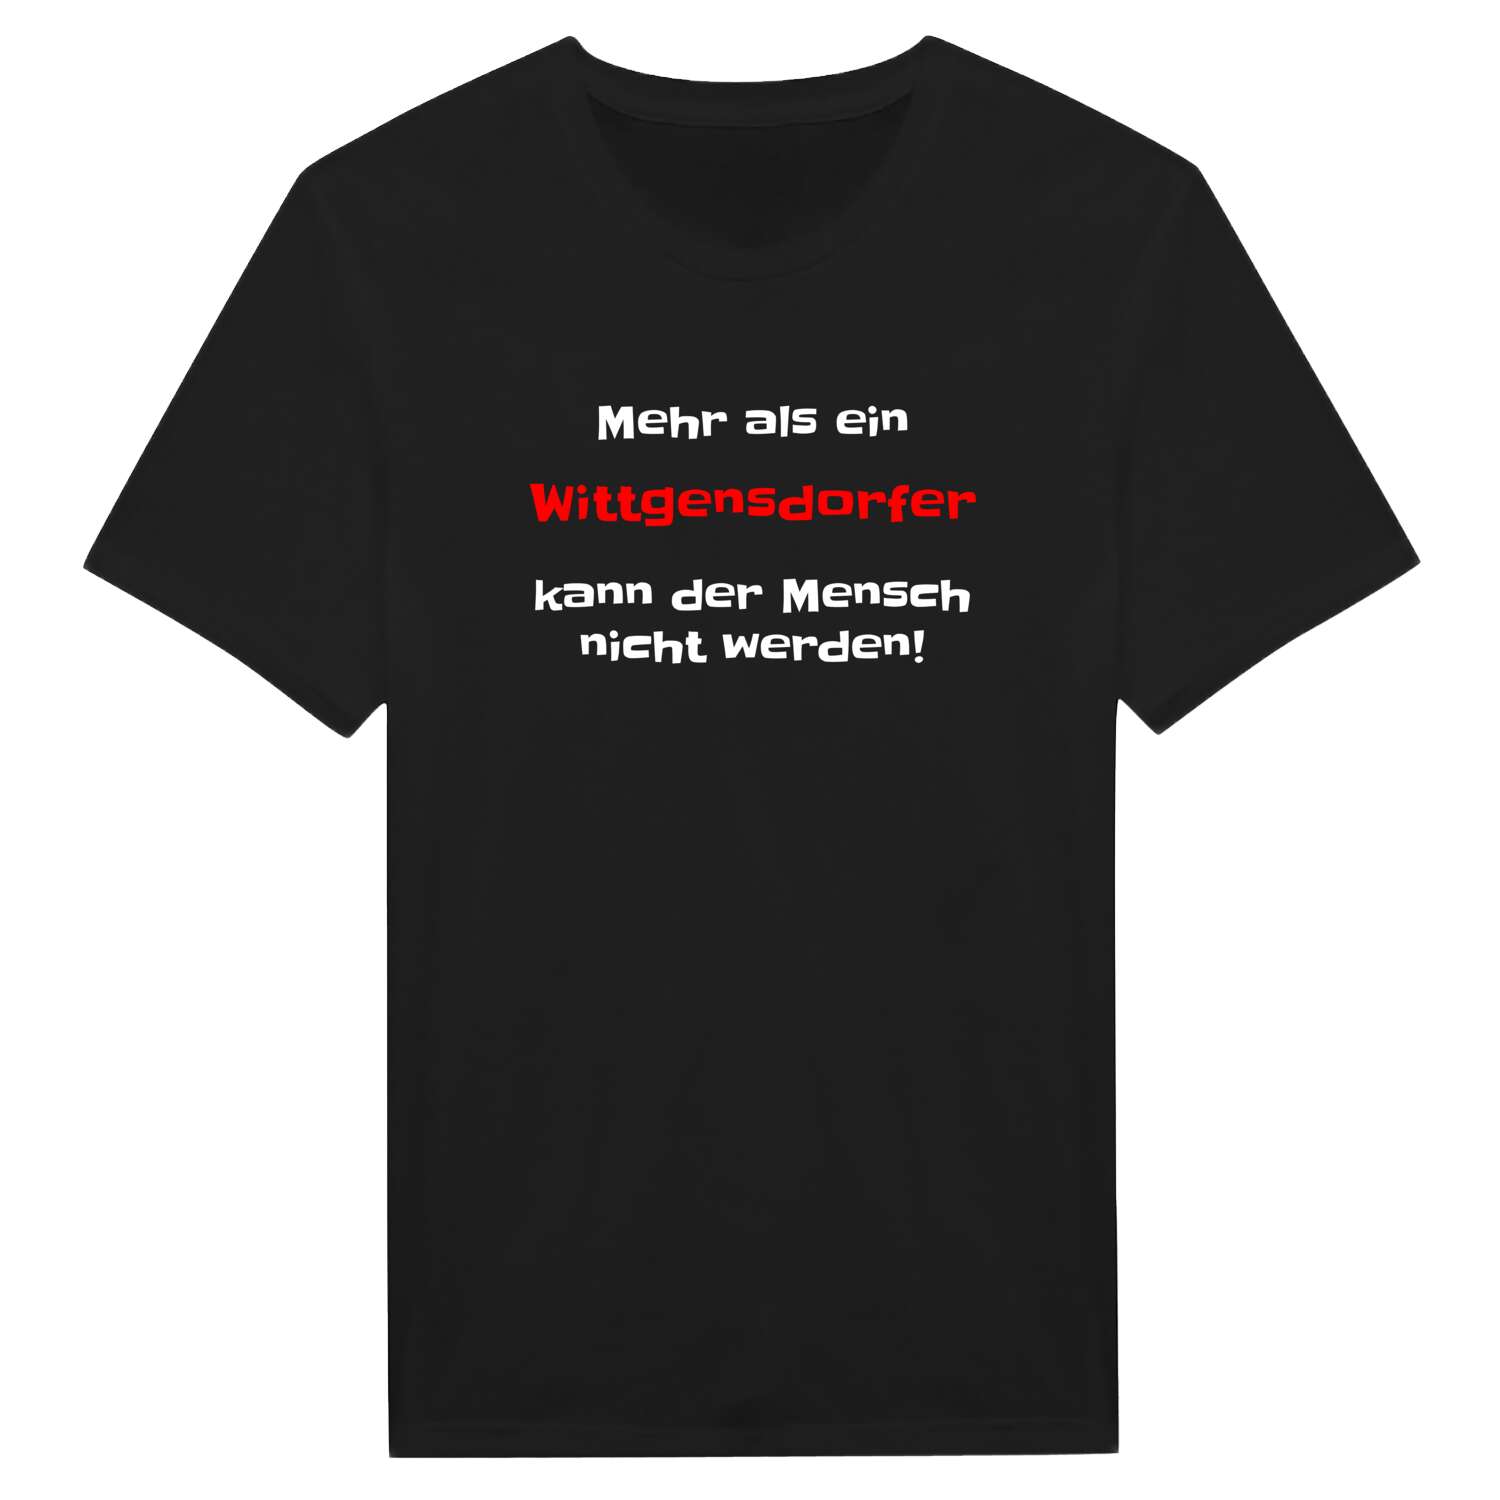 Wittgensdorf T-Shirt »Mehr als ein«